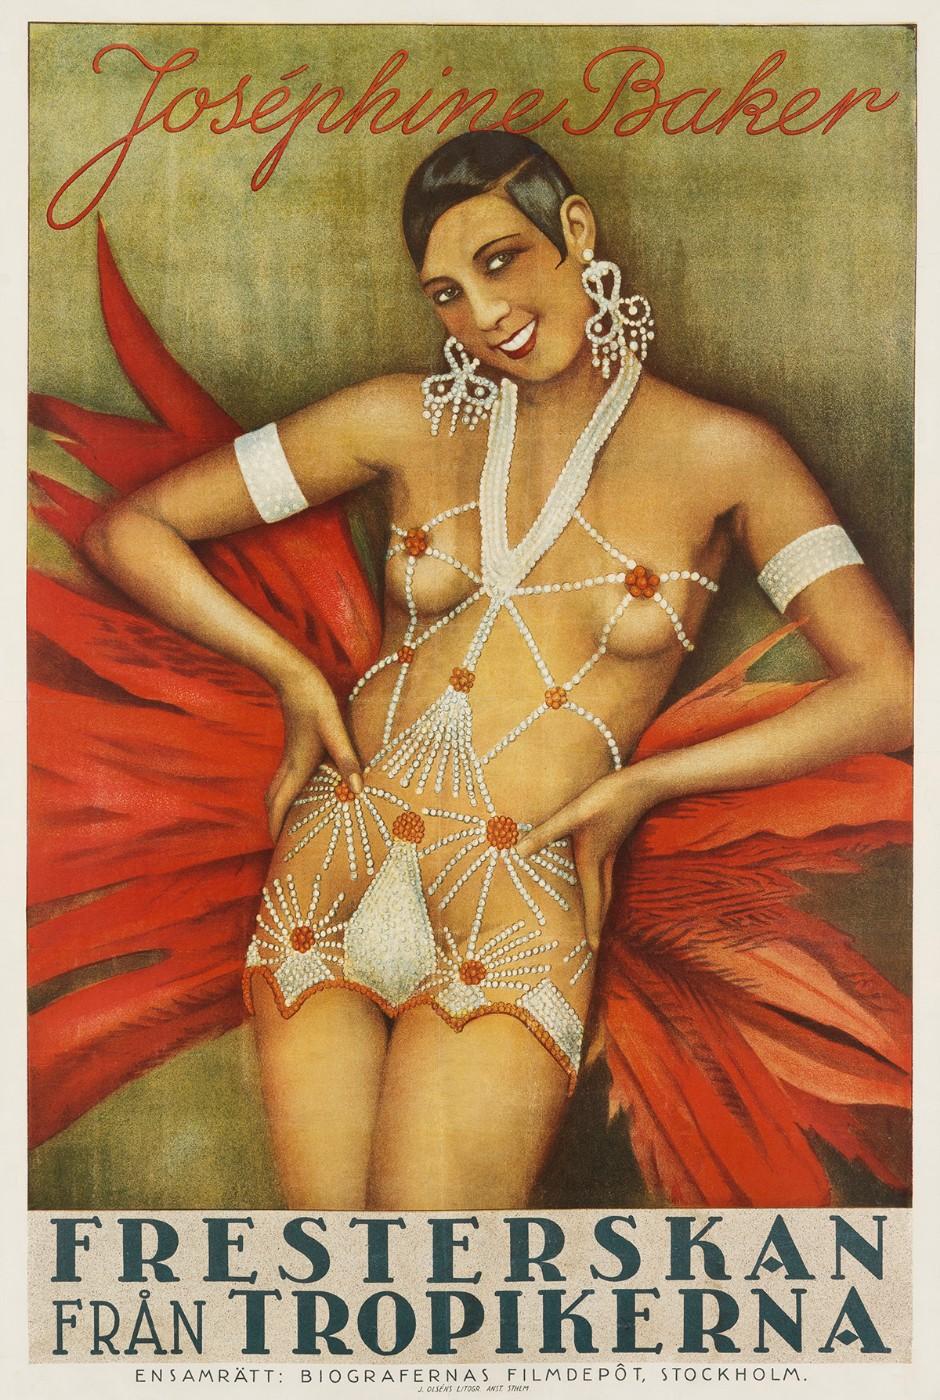 Designer Unknown, Josephine Baker/Fresterskan Fran Tropikerna/[La Sirene des Tropiques], 1927​​​​​​​